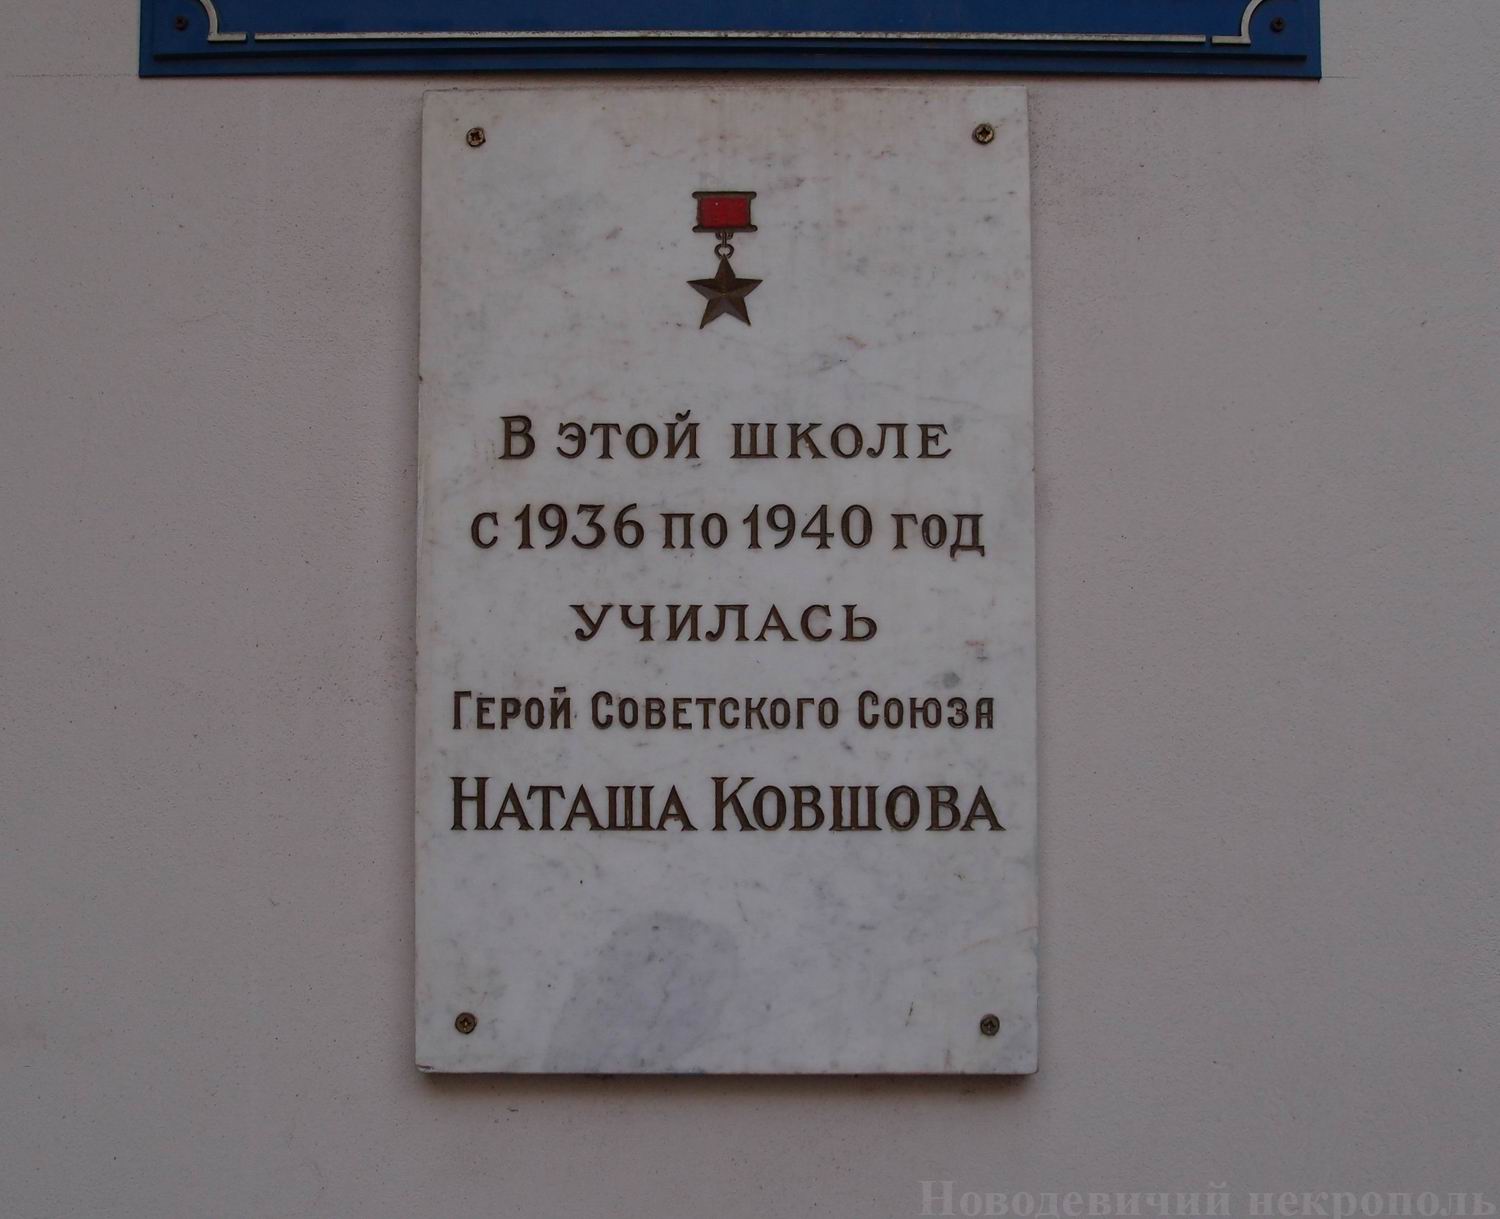 Мемориальная доска Ковшовой Н.В. (1920-1942), в Уланском переулке, дом 8.